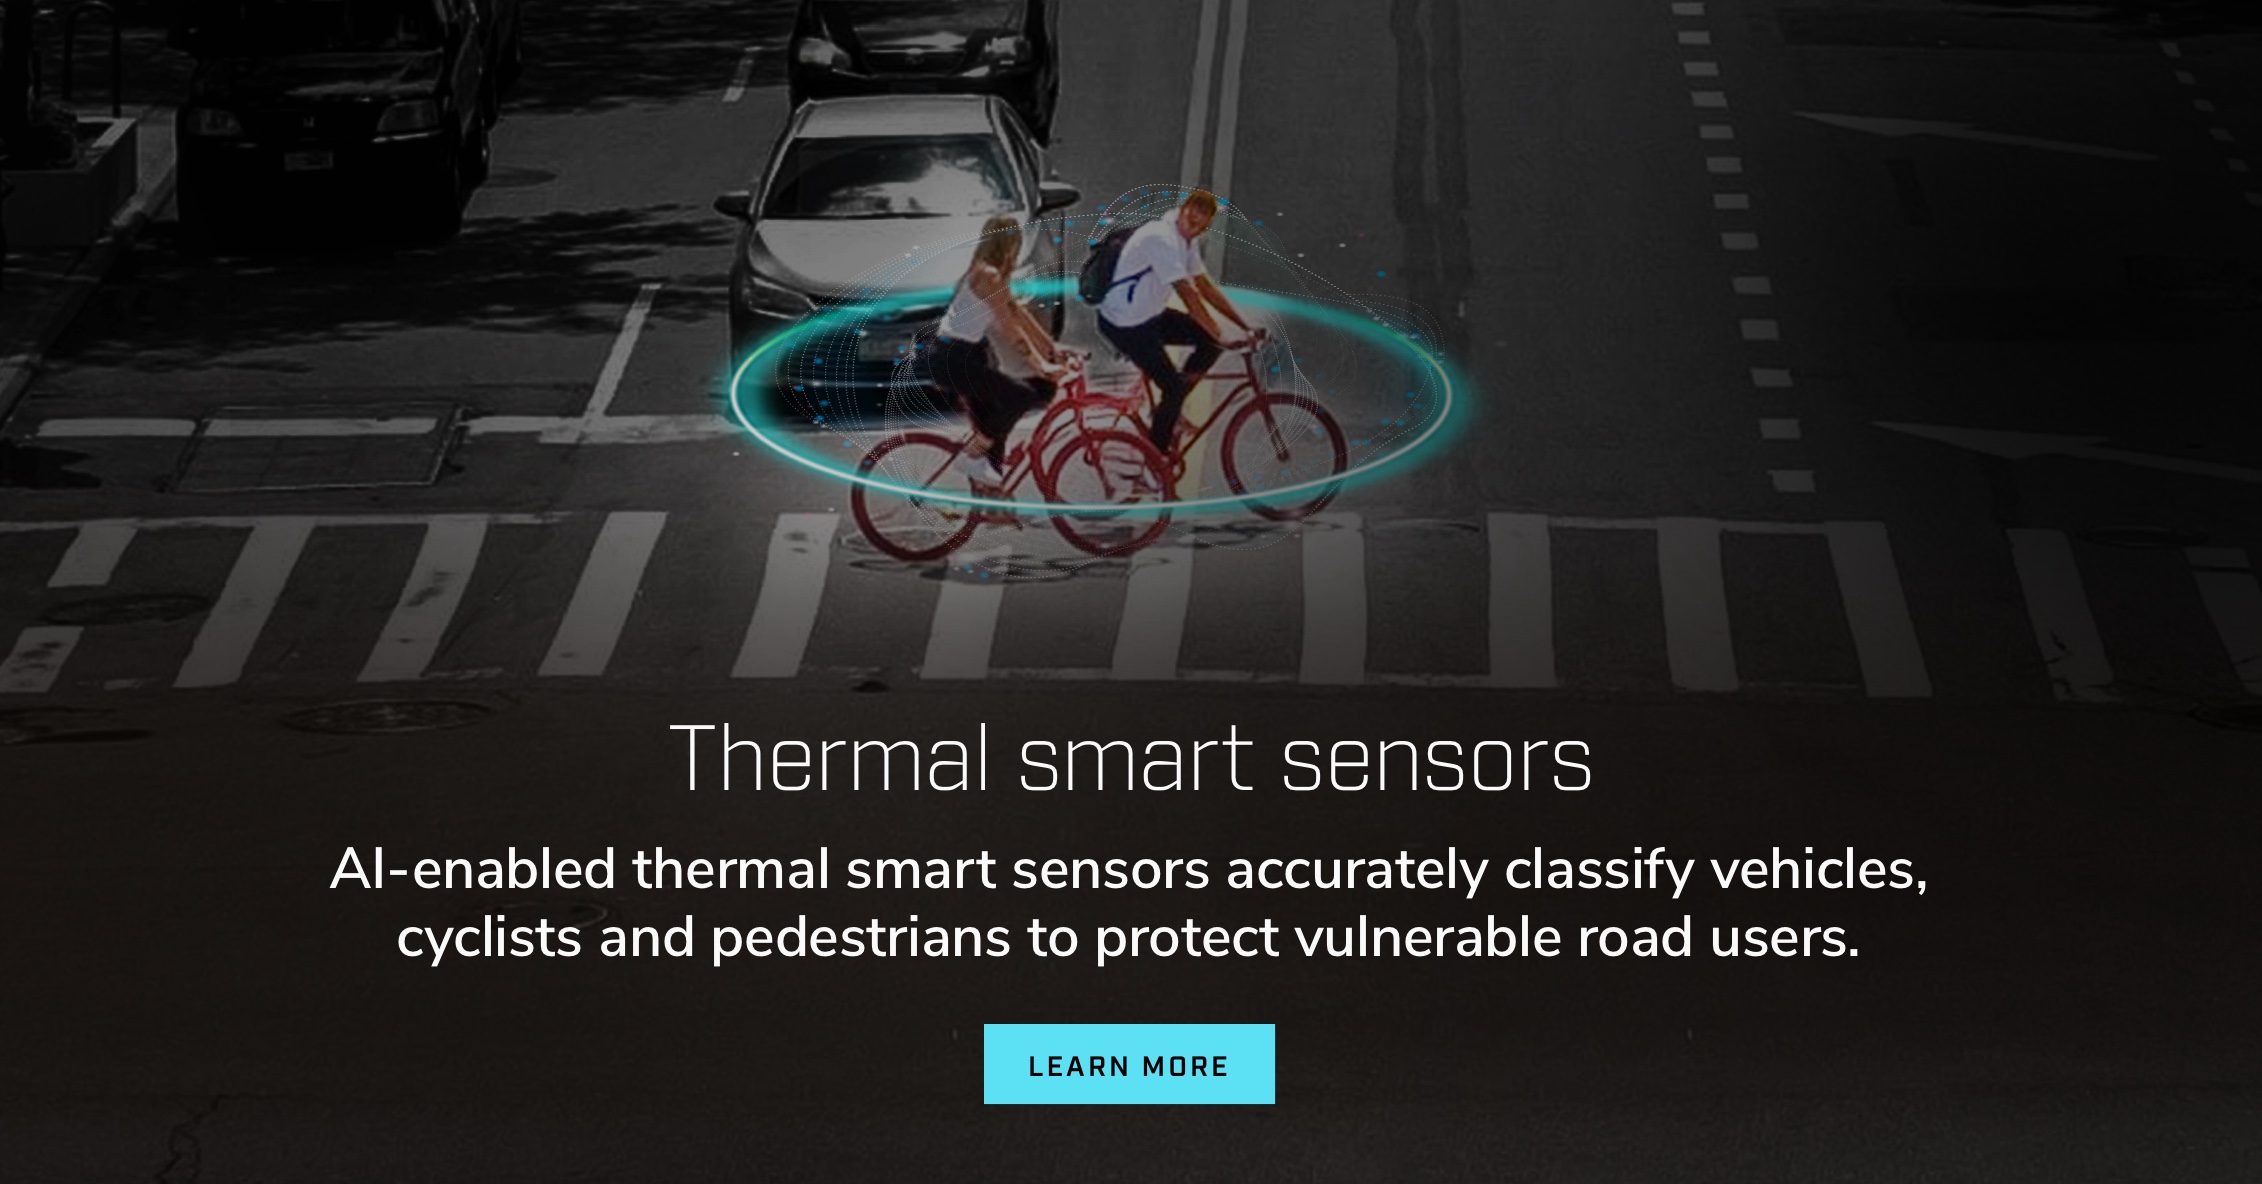 Capteurs intelligents thermiques. Les capteurs thermiques intelligents dotés d’IA classent avec précision les véhicules, les cyclistes et les piétons afin de protéger les usagers vulnérables de la route.